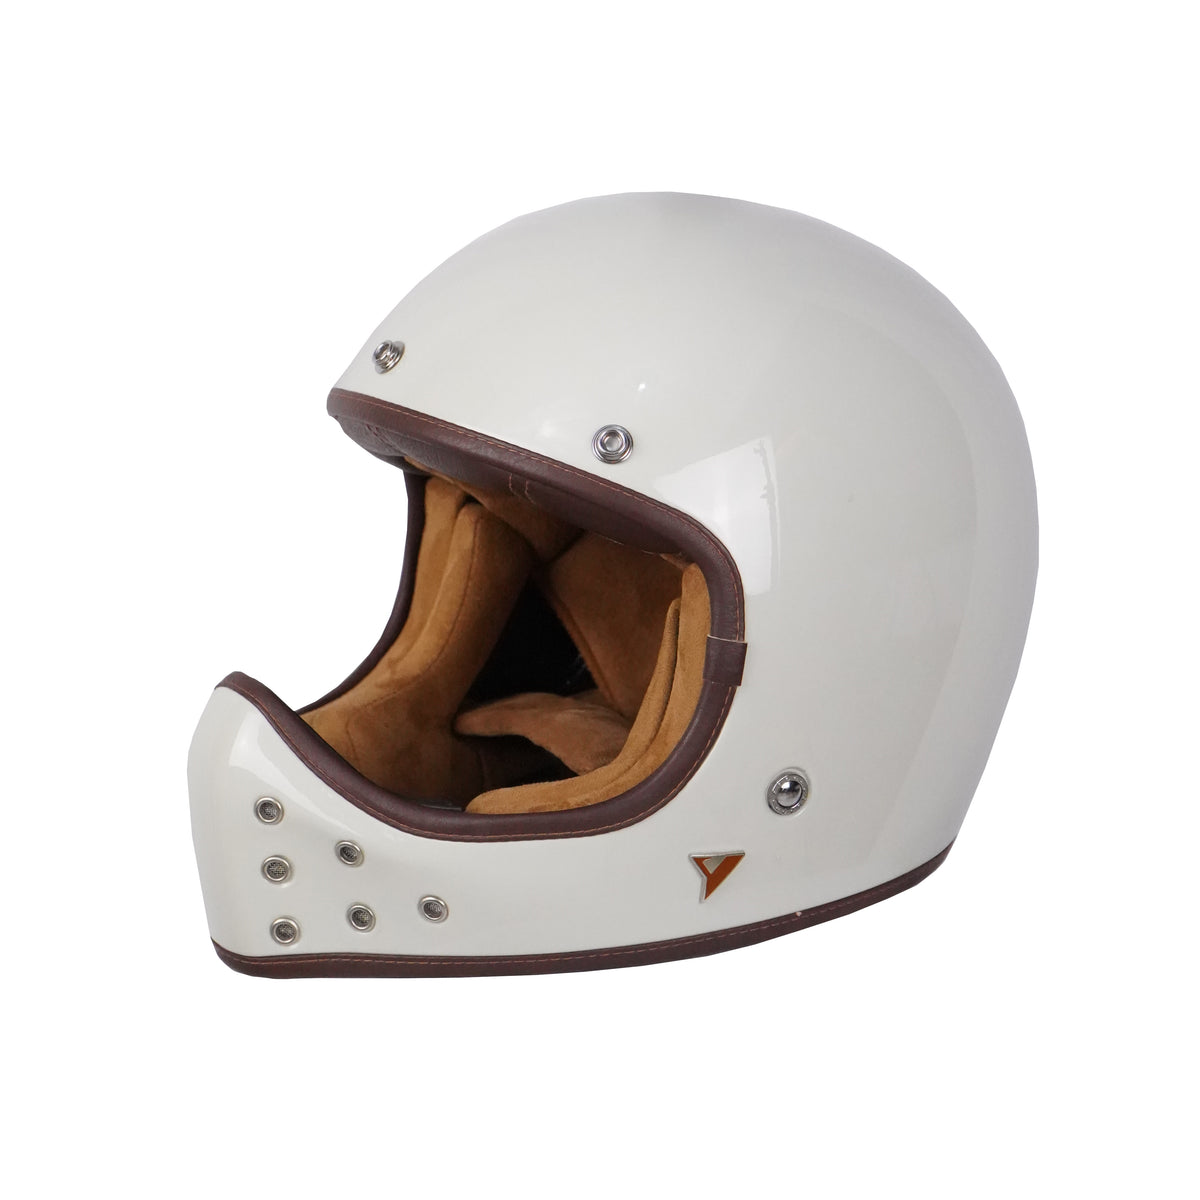 ByCity The Rock Full Face Helmet - White Bone R22.06